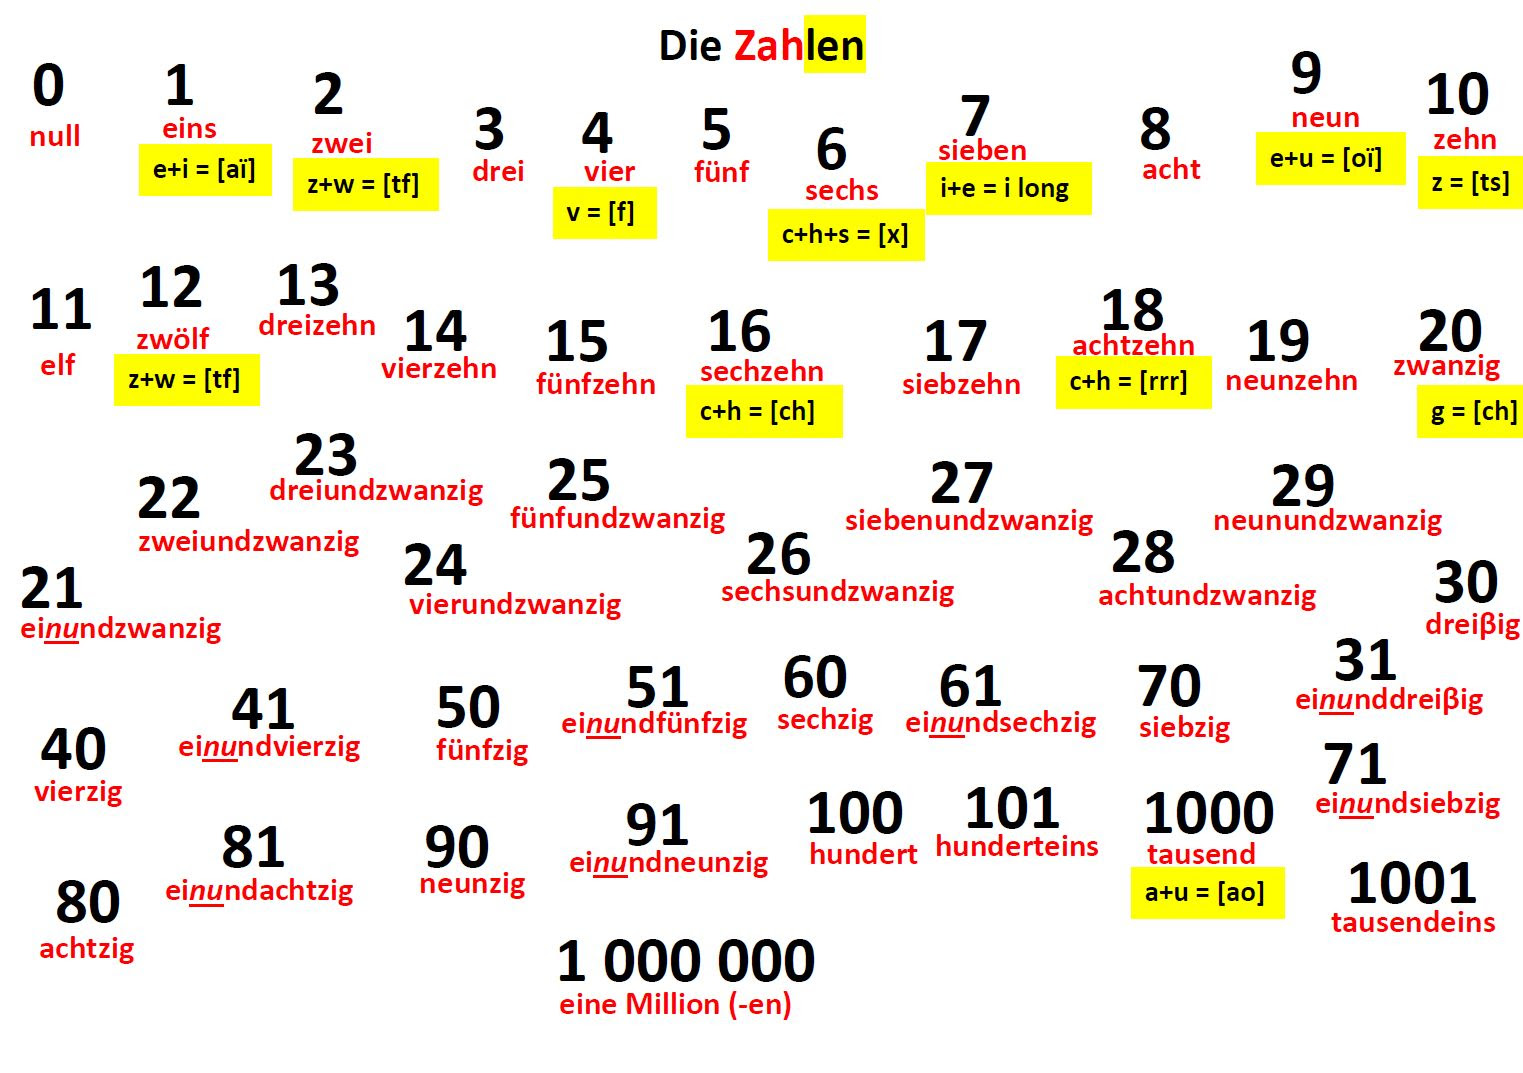 Deutsche Zahlen